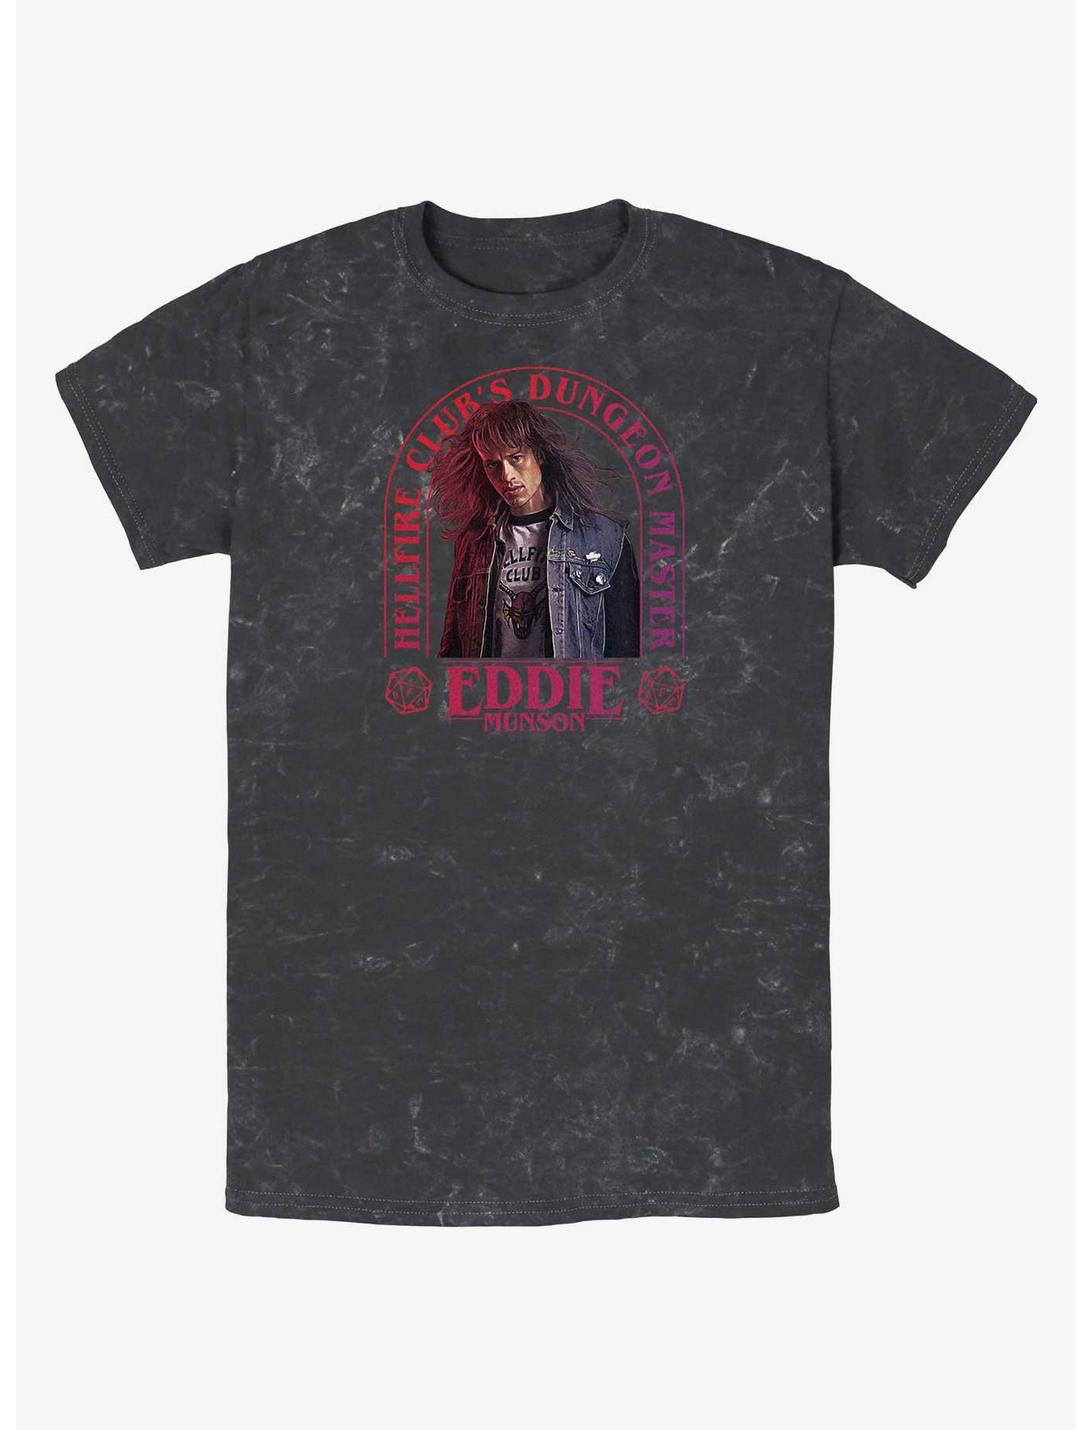 Stranger Things Dungeon Master Eddie Munson Mineral Wash T-Shirt, BLACK, hi-res